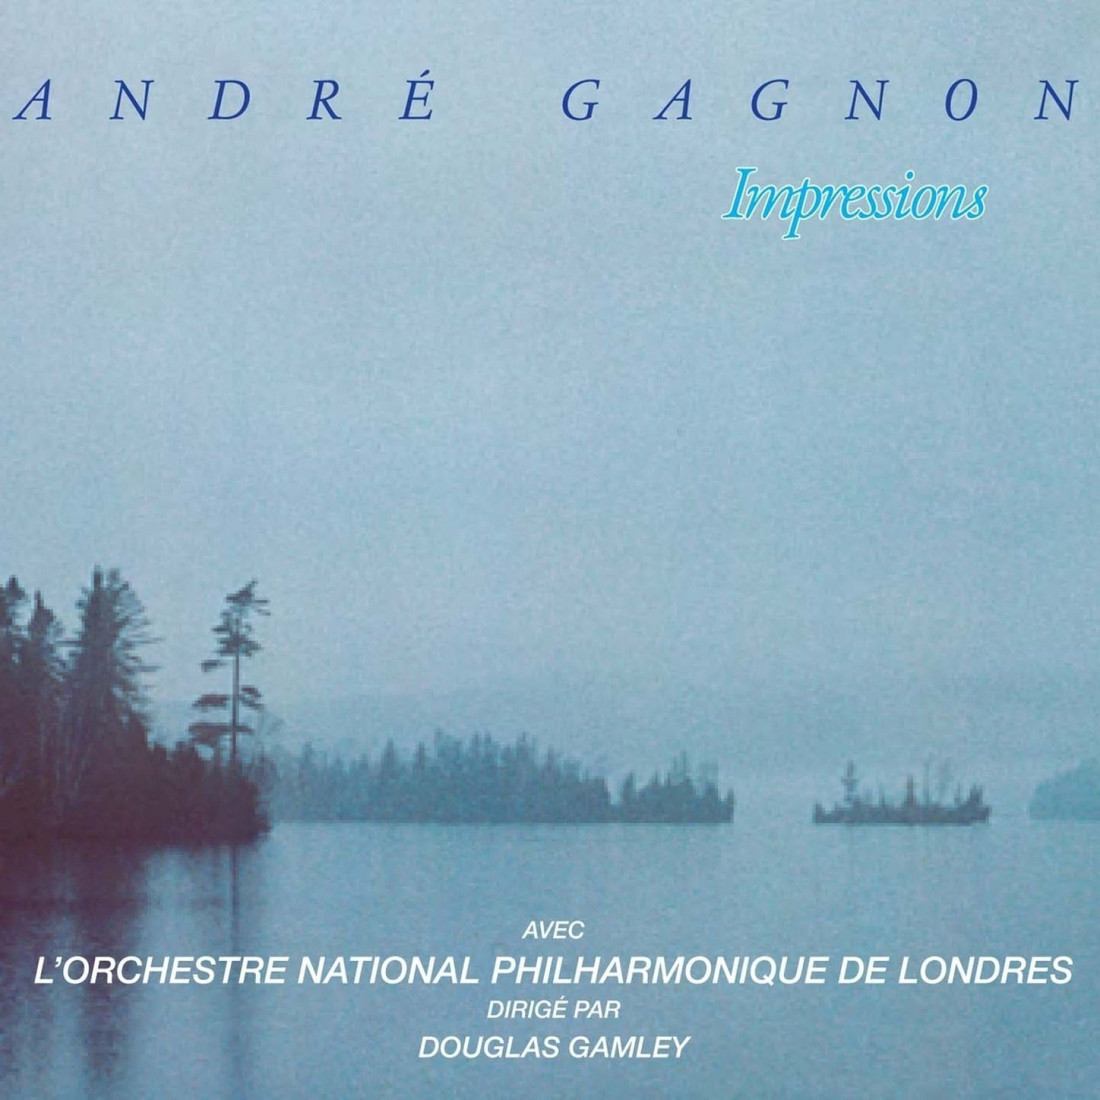 [Andre Gagnon] Comme Au Premier Jour (첫날처럼) (Impressions-1983) Photo-Image